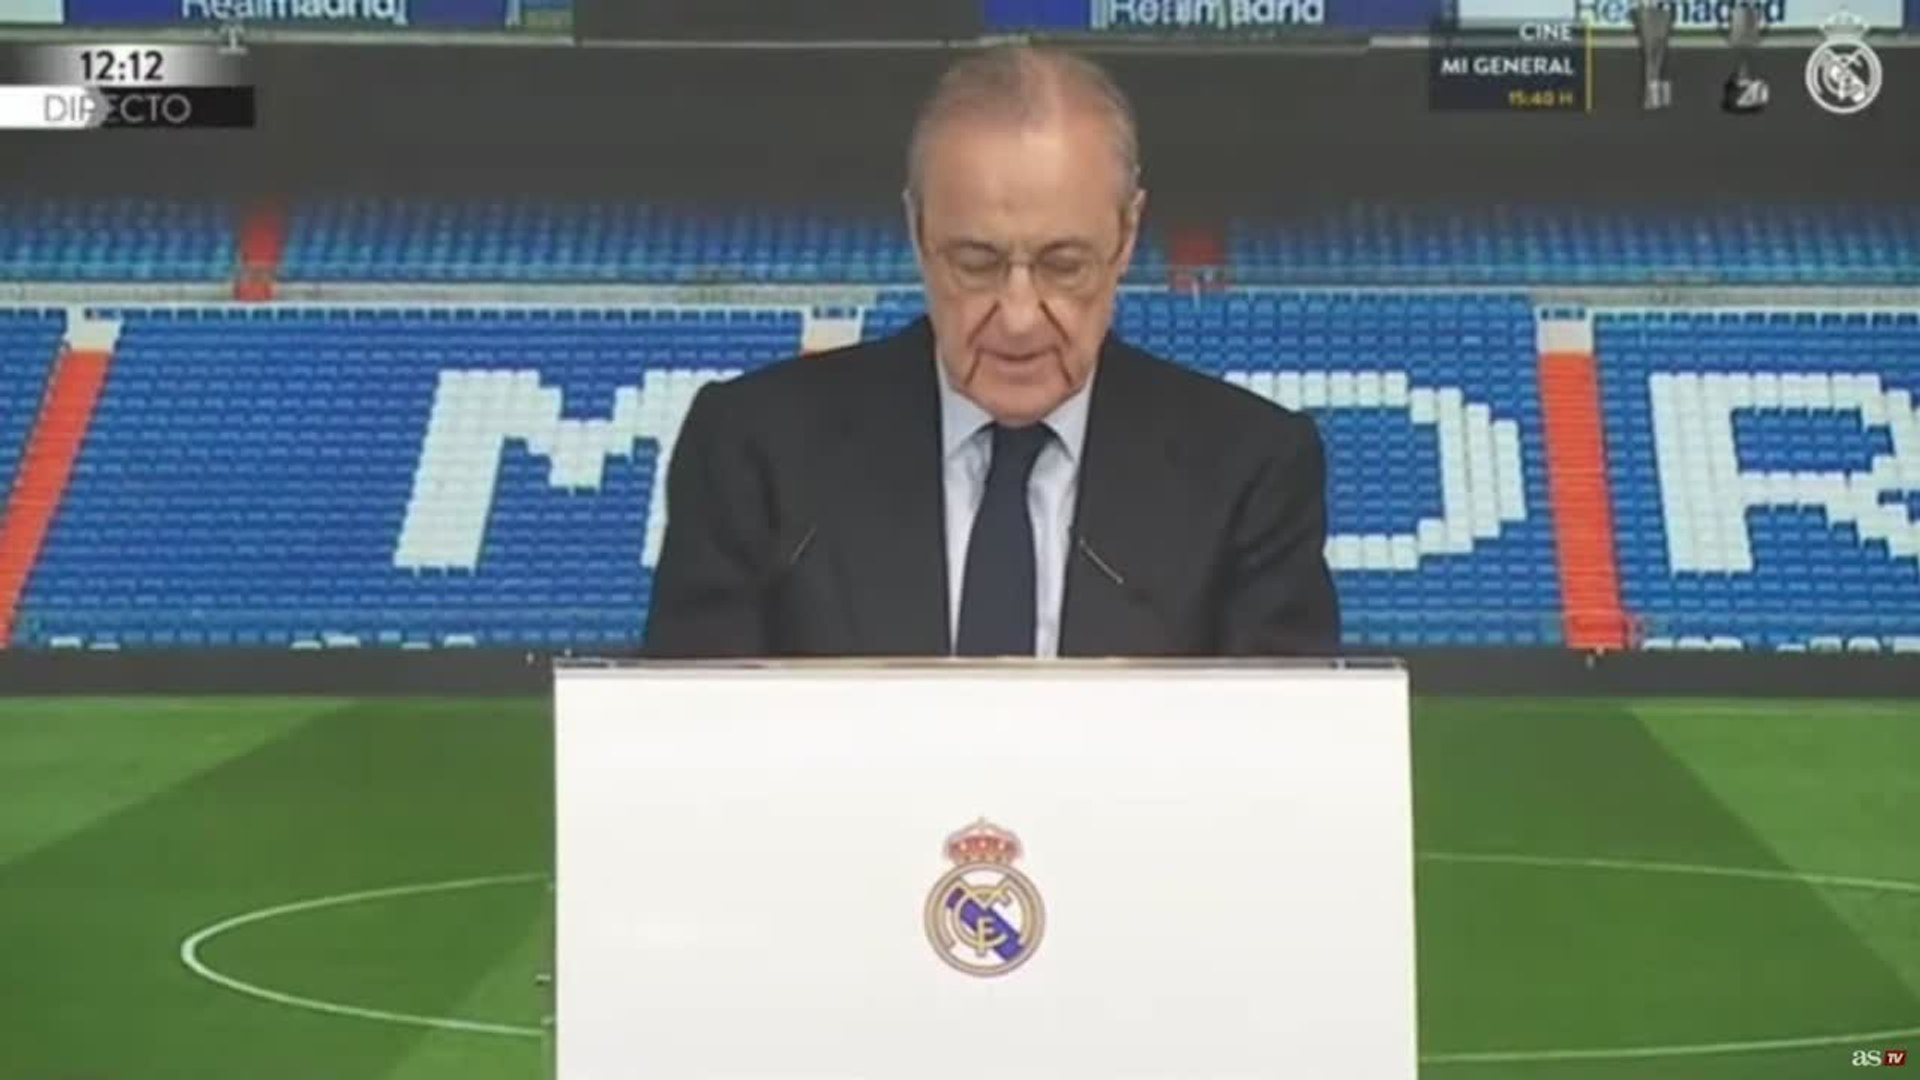 Vídeo, Presentación de Bellingham con el Real Madrid